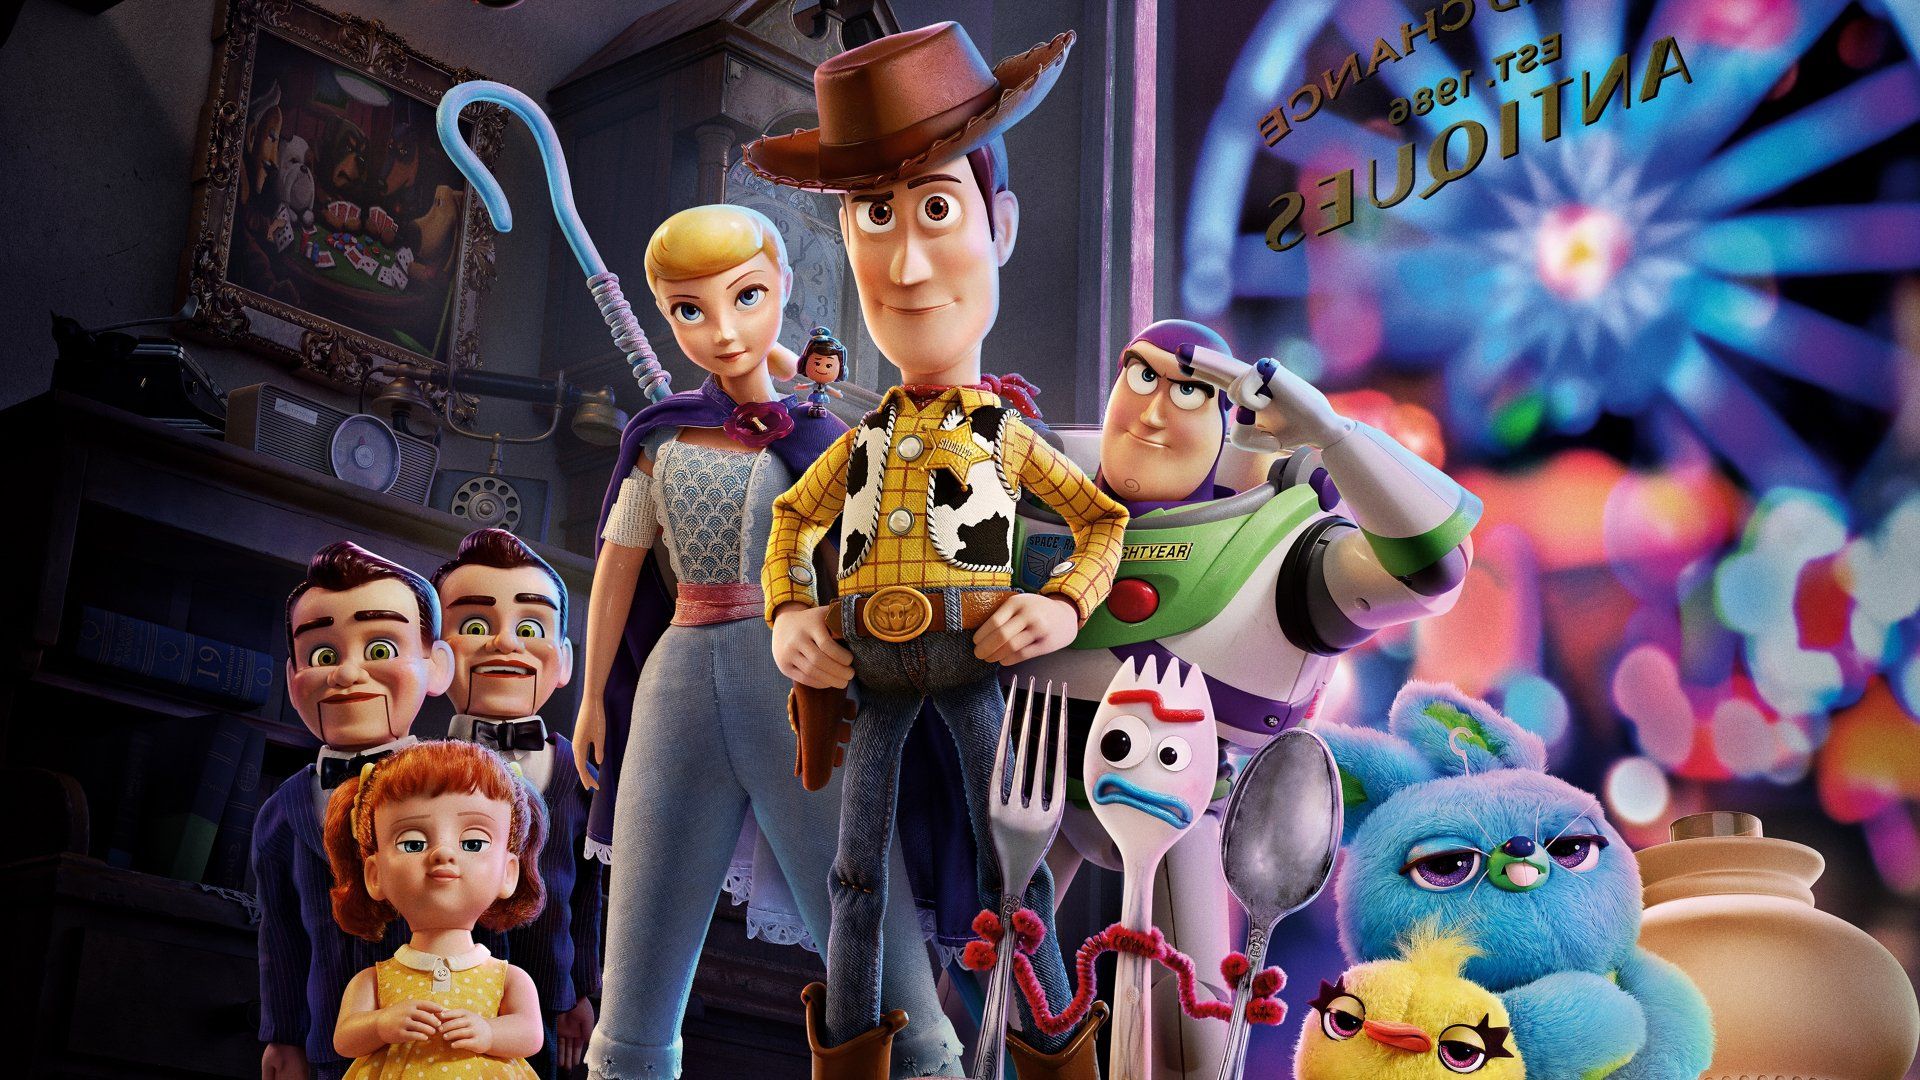 36 Fondos de pantalla de Toy Story 4 HD | Imágenes de fondo